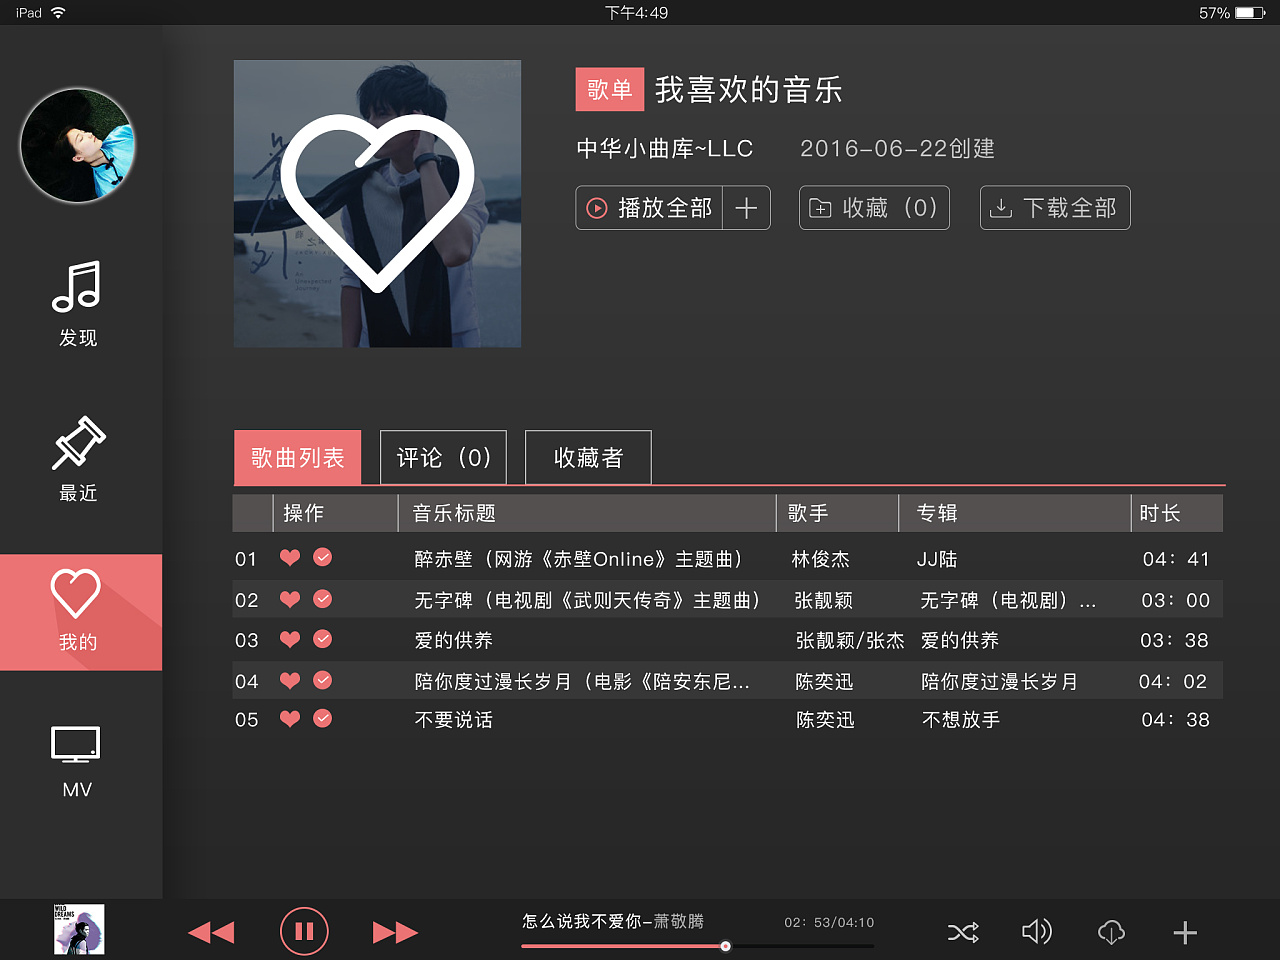 在线音乐播放器音乐媒体app设计iOS Ui套装下载[XD] MeMusic Online Music Player Mobile App ...